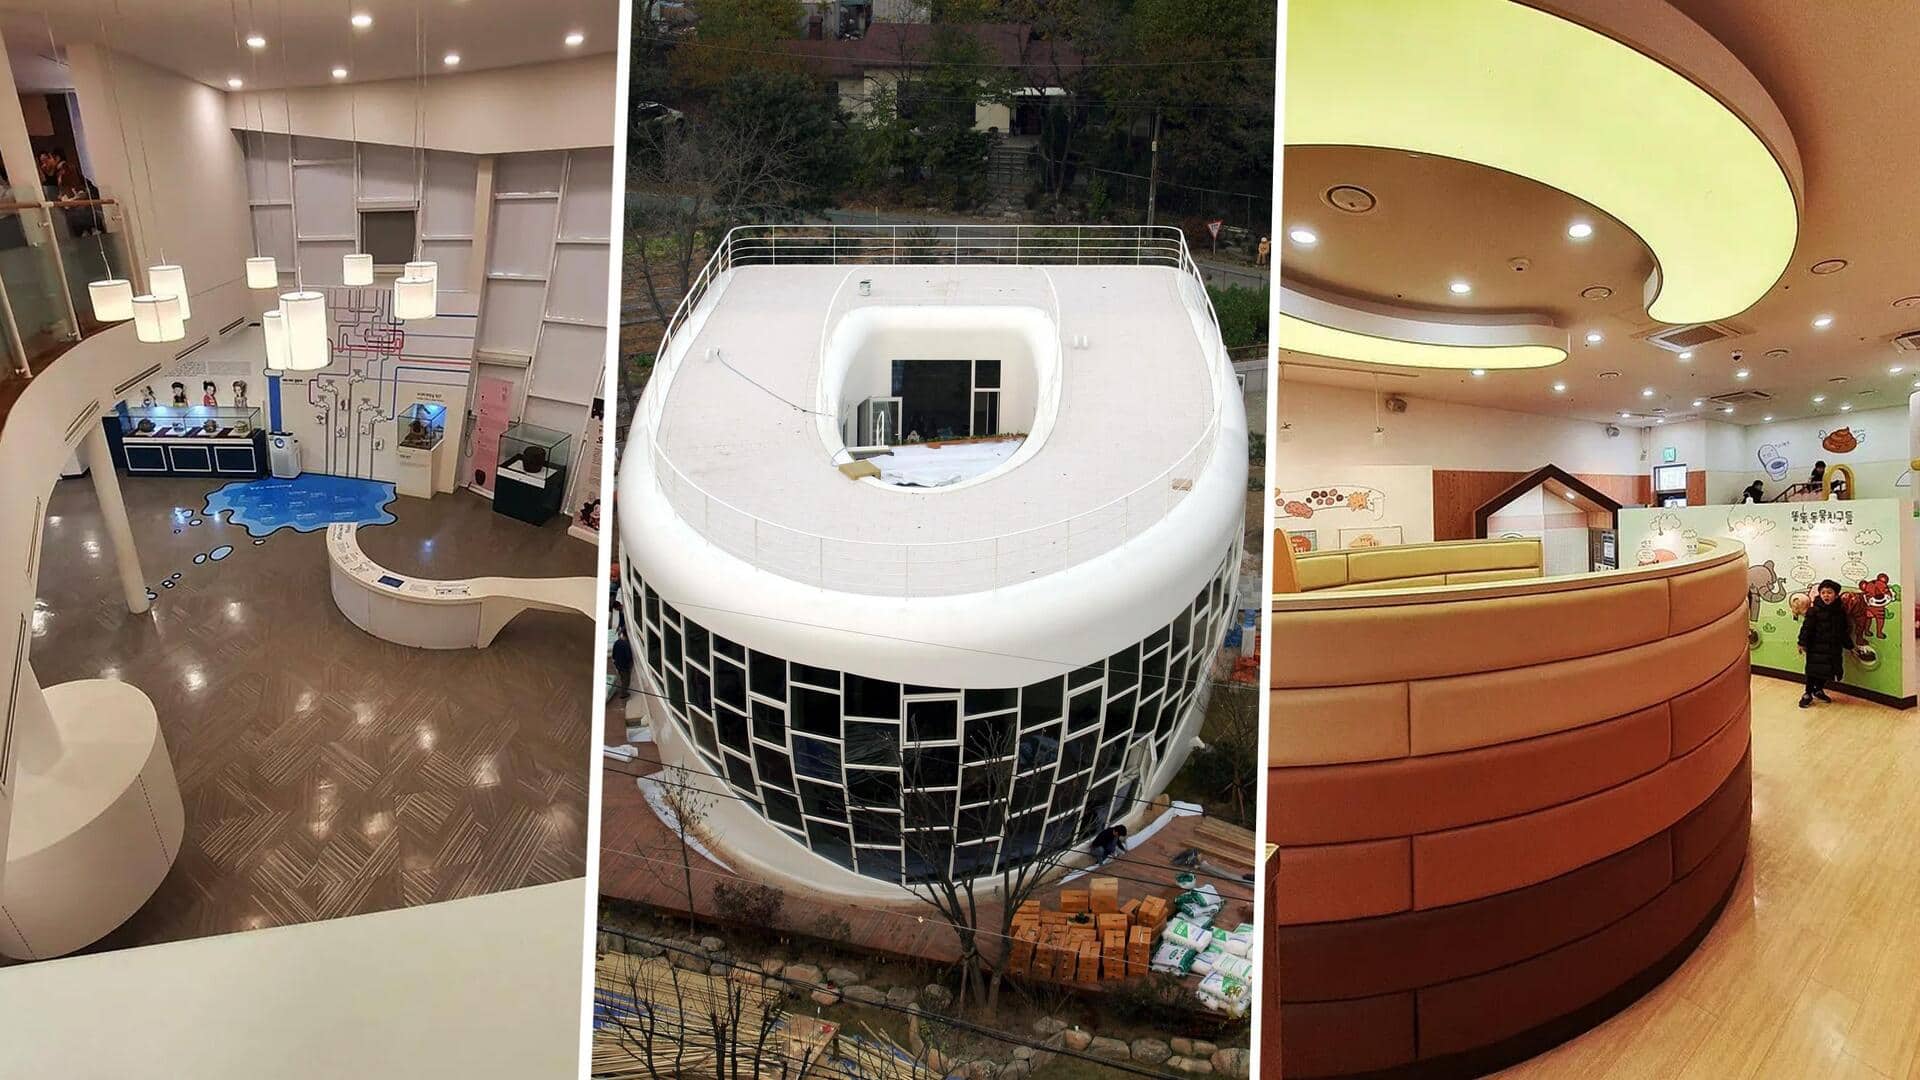 दक्षिण-कोरिया: व्यक्ति ने खुद के लिए बनवाया टॉयलेट के डिजाइन वाला घर, जानिए कारण